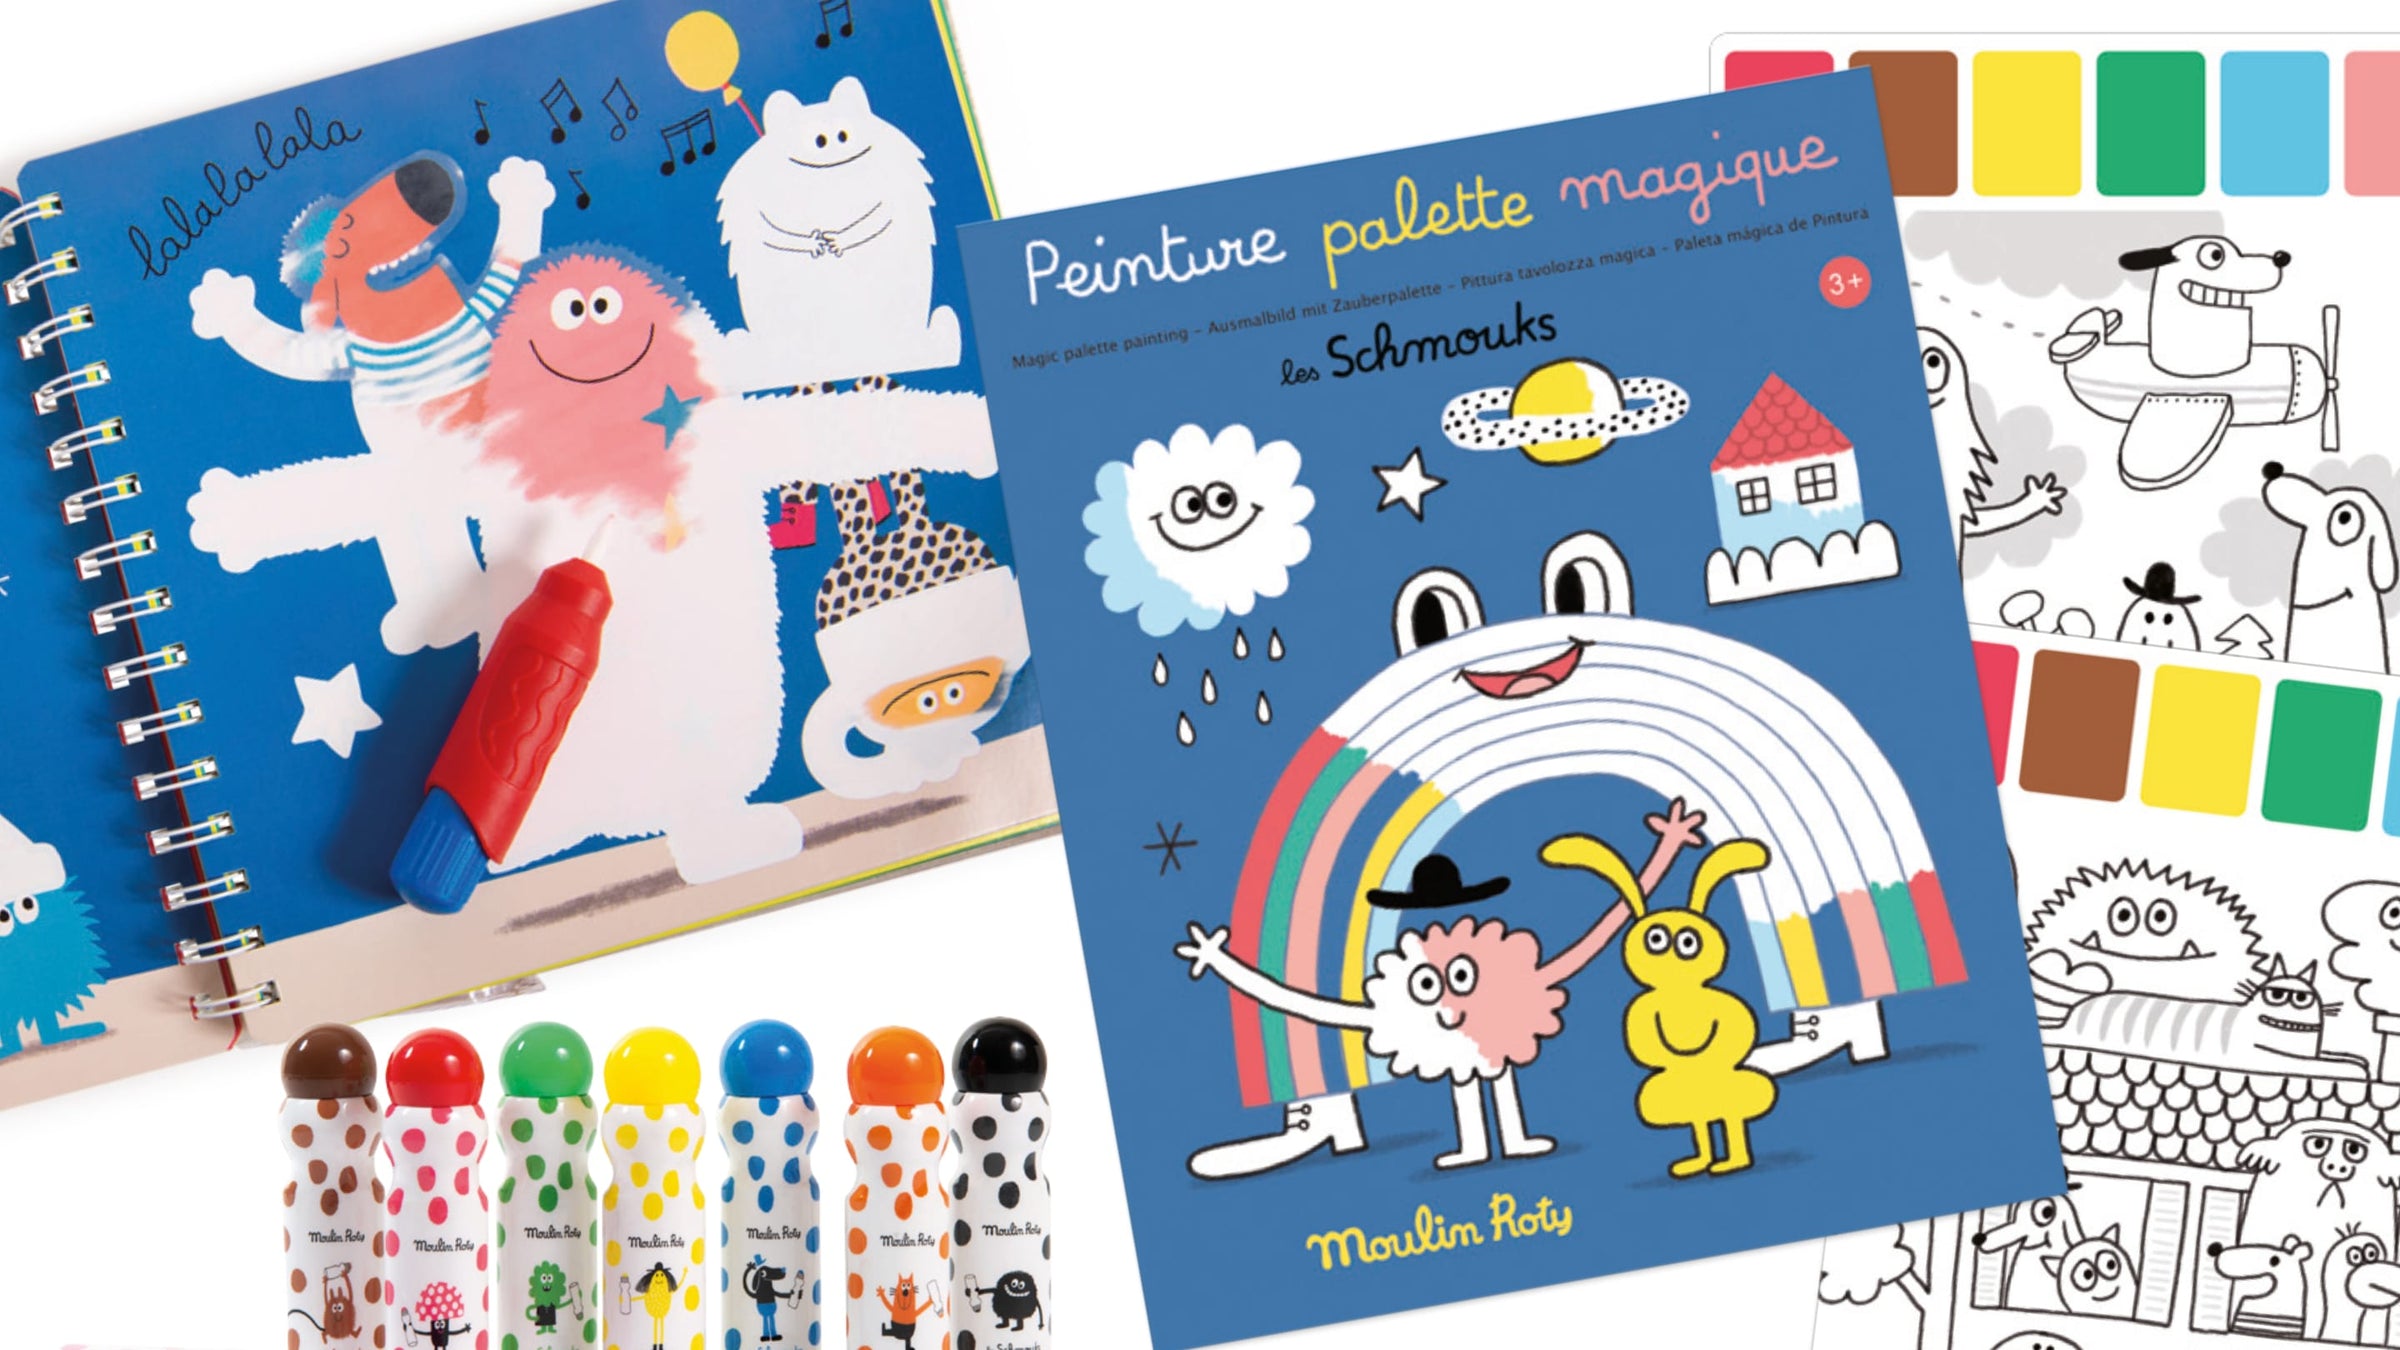 Giochi Creativi e Fai da Te per Bambini  Moulin Roty e Djeco – Pagina 6 –  PIPI & PUPU and friends